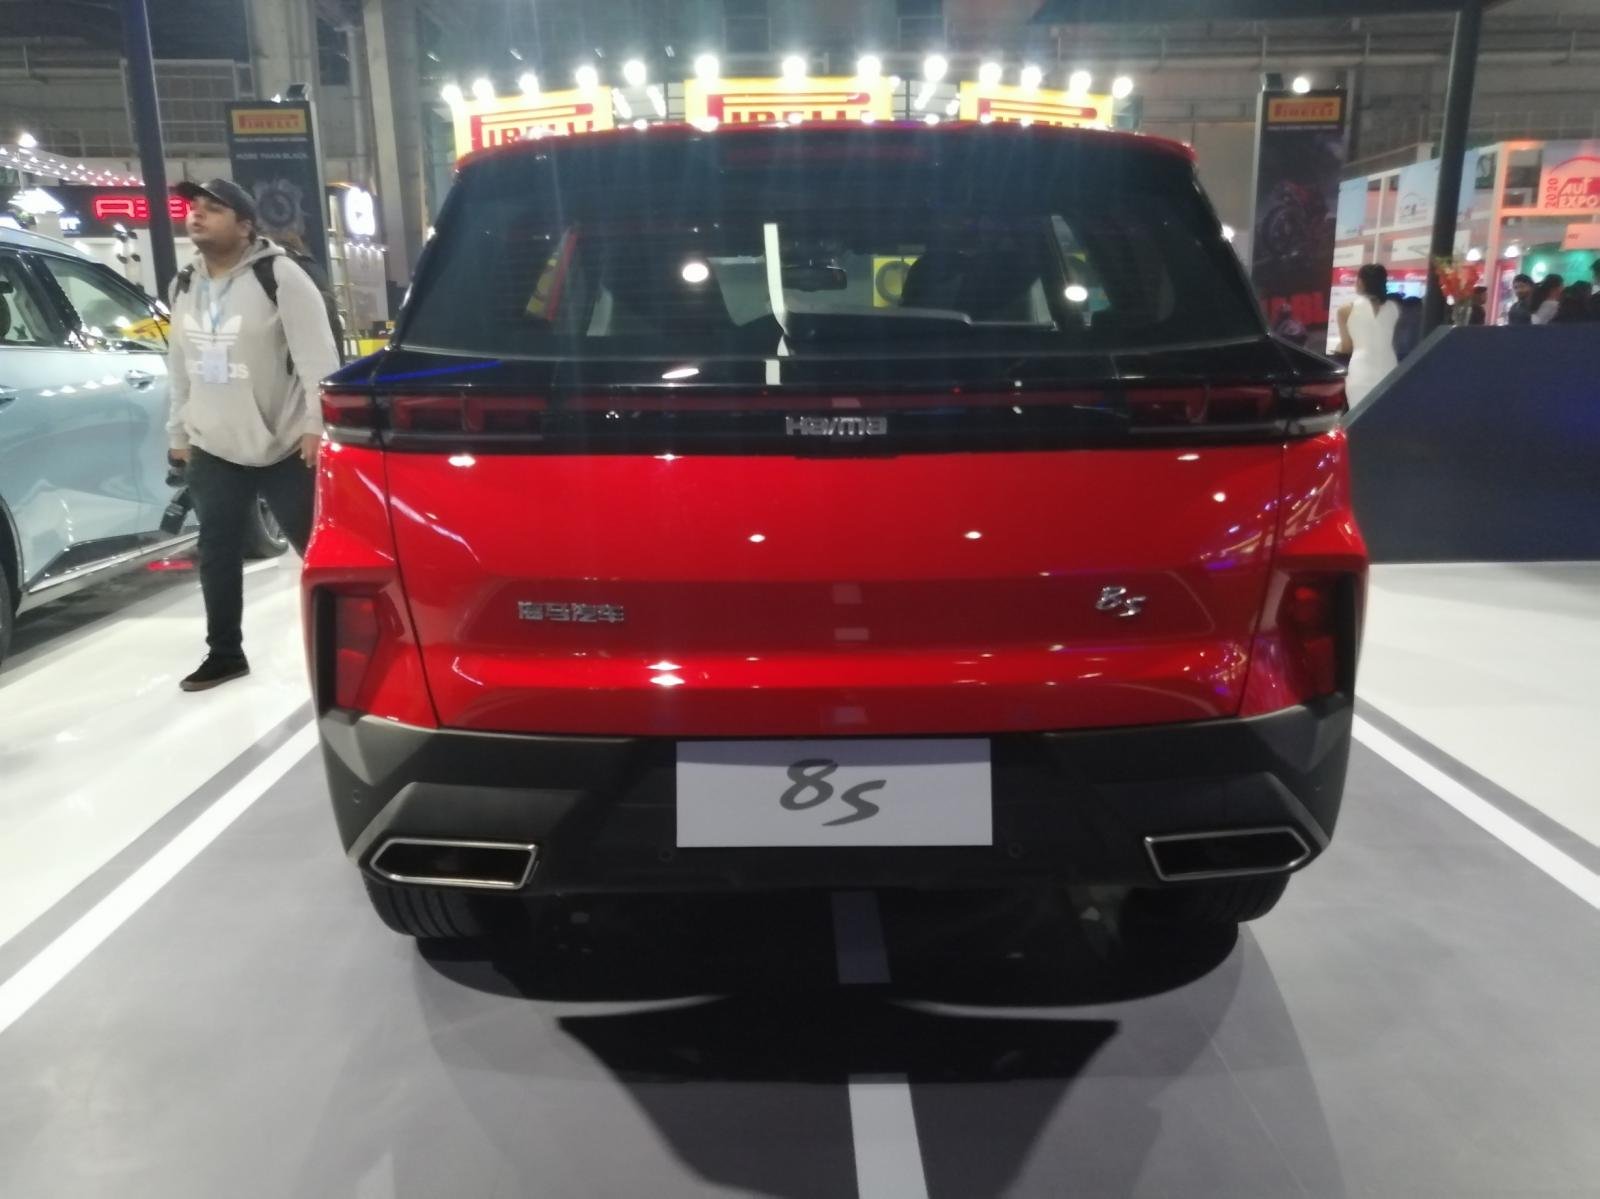 Auto Expo 2020 - Haima 8S showcased